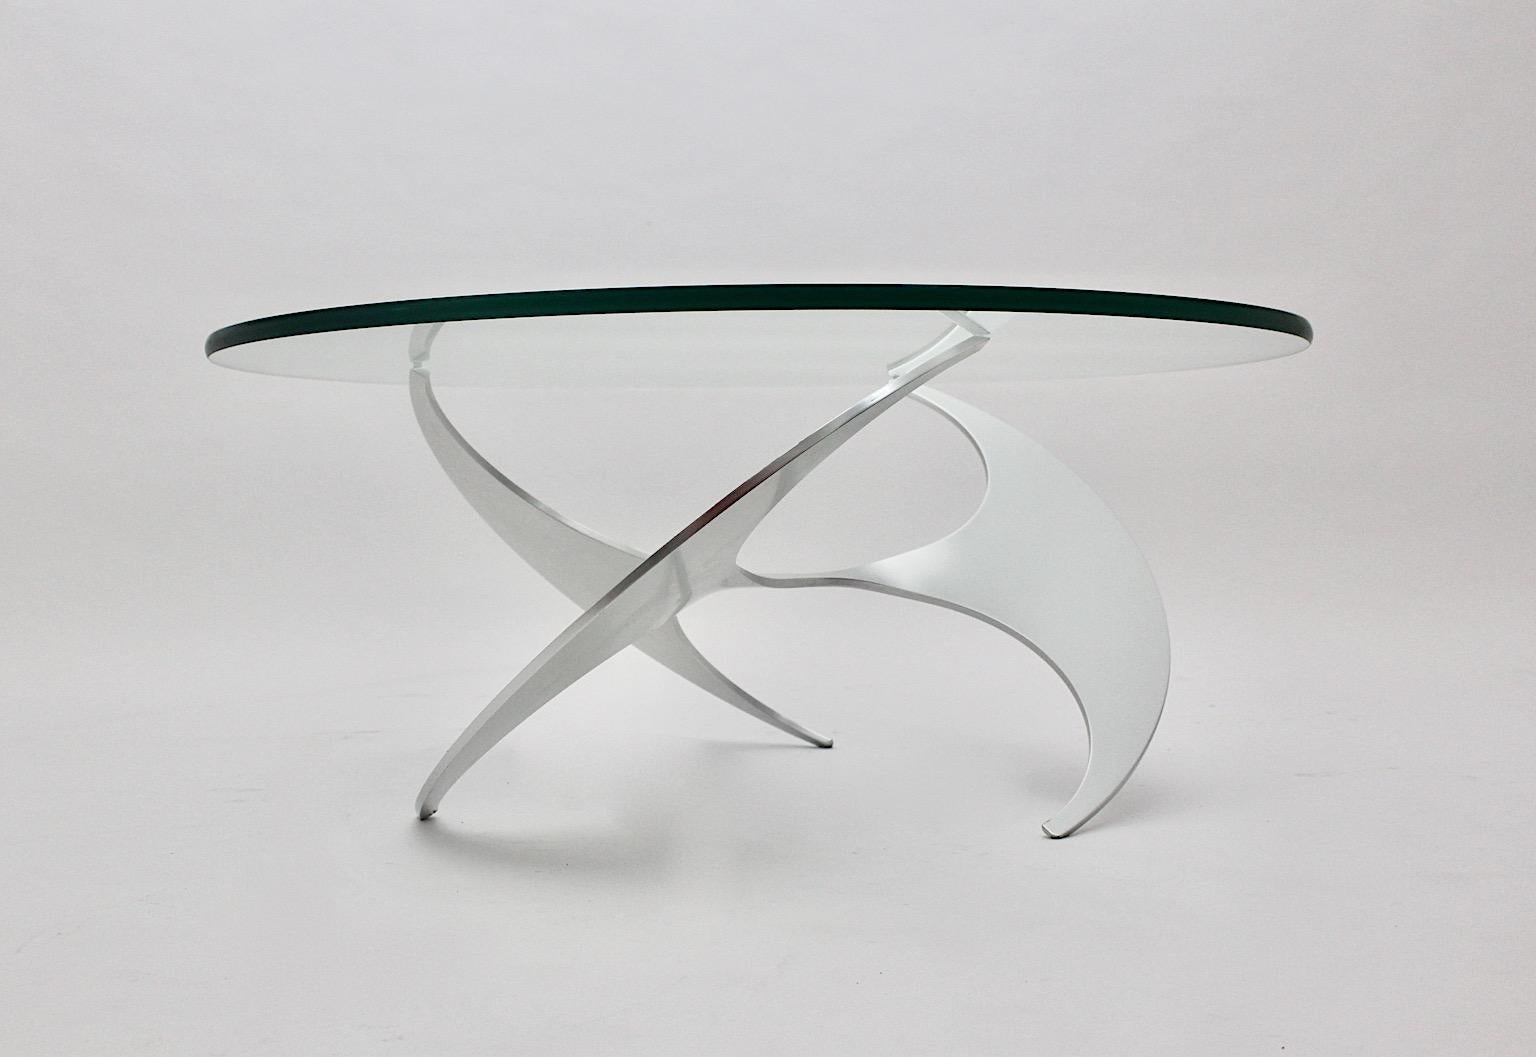 Ein Space Age Vintage Silber Aluminium Glas Couchtisch oder Sofa Tisch, der von Knut Hesterberg für Ronald Schmitt, ca. 1964, Deutschland entworfen wurde.
Während der polierte Aluminiumsockel eine großartig gedrehte Bewegung als Luftschraube zeigt,